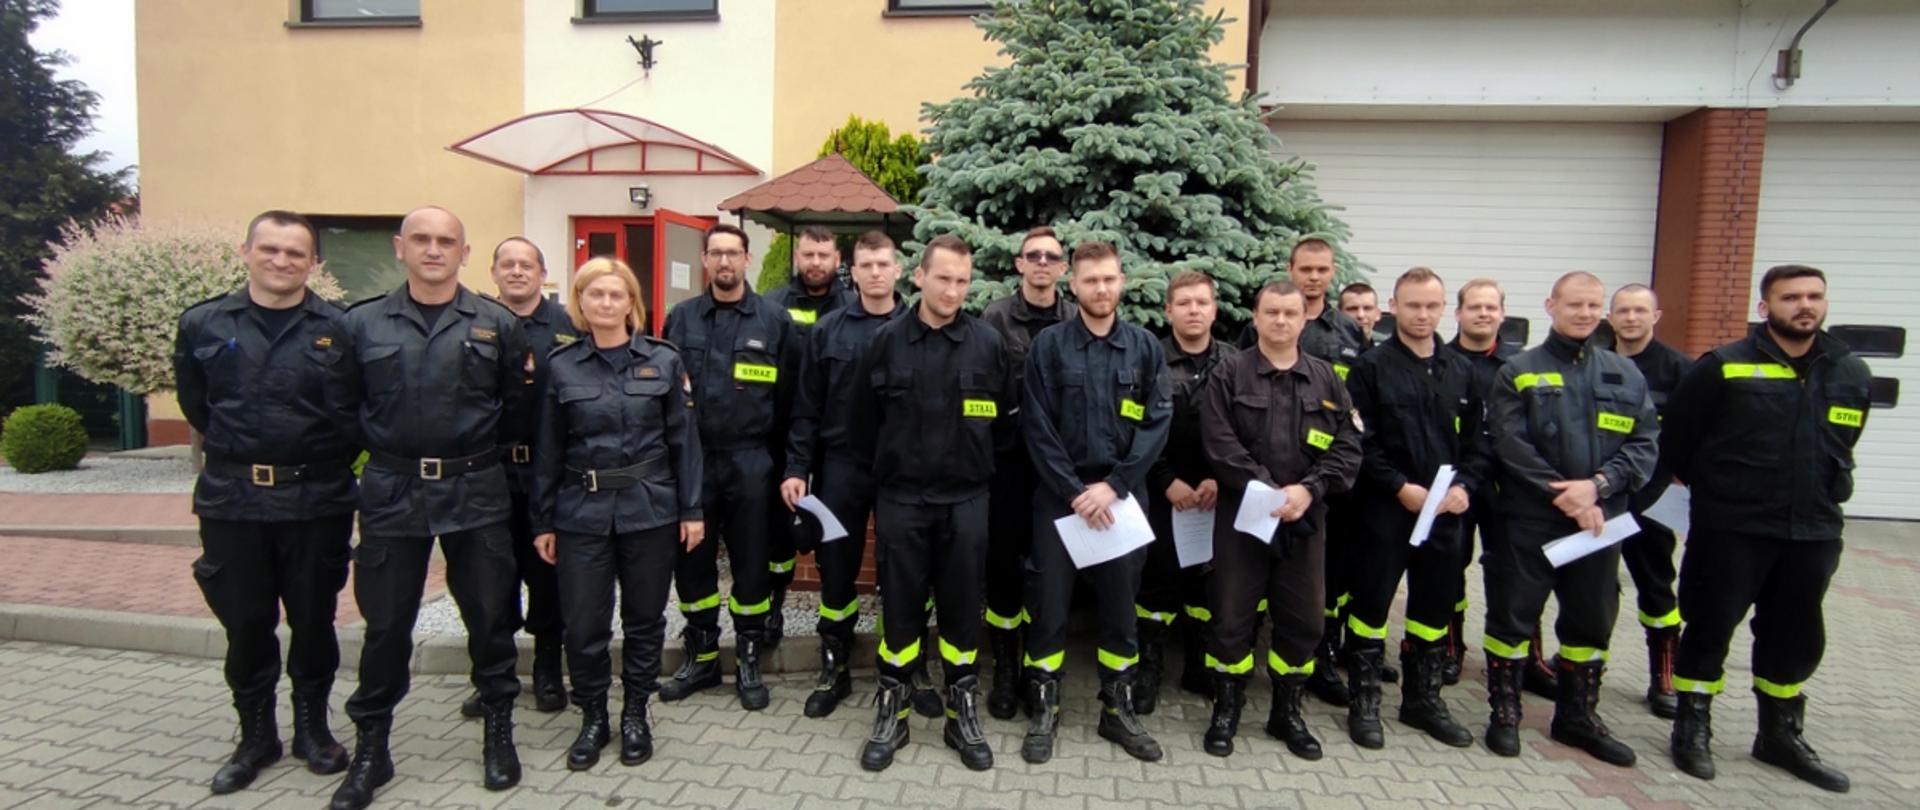 na zdjęciu widać strażaków OSP oraz strażaków PSP z komisji egzaminacyjnej przed budynkiem oławskiej komendy PSP. Strażacy są w umundurowaniu koszarowym, trzymają zaświadczenia o ukończonym szkoleniu dla dowódców OSP